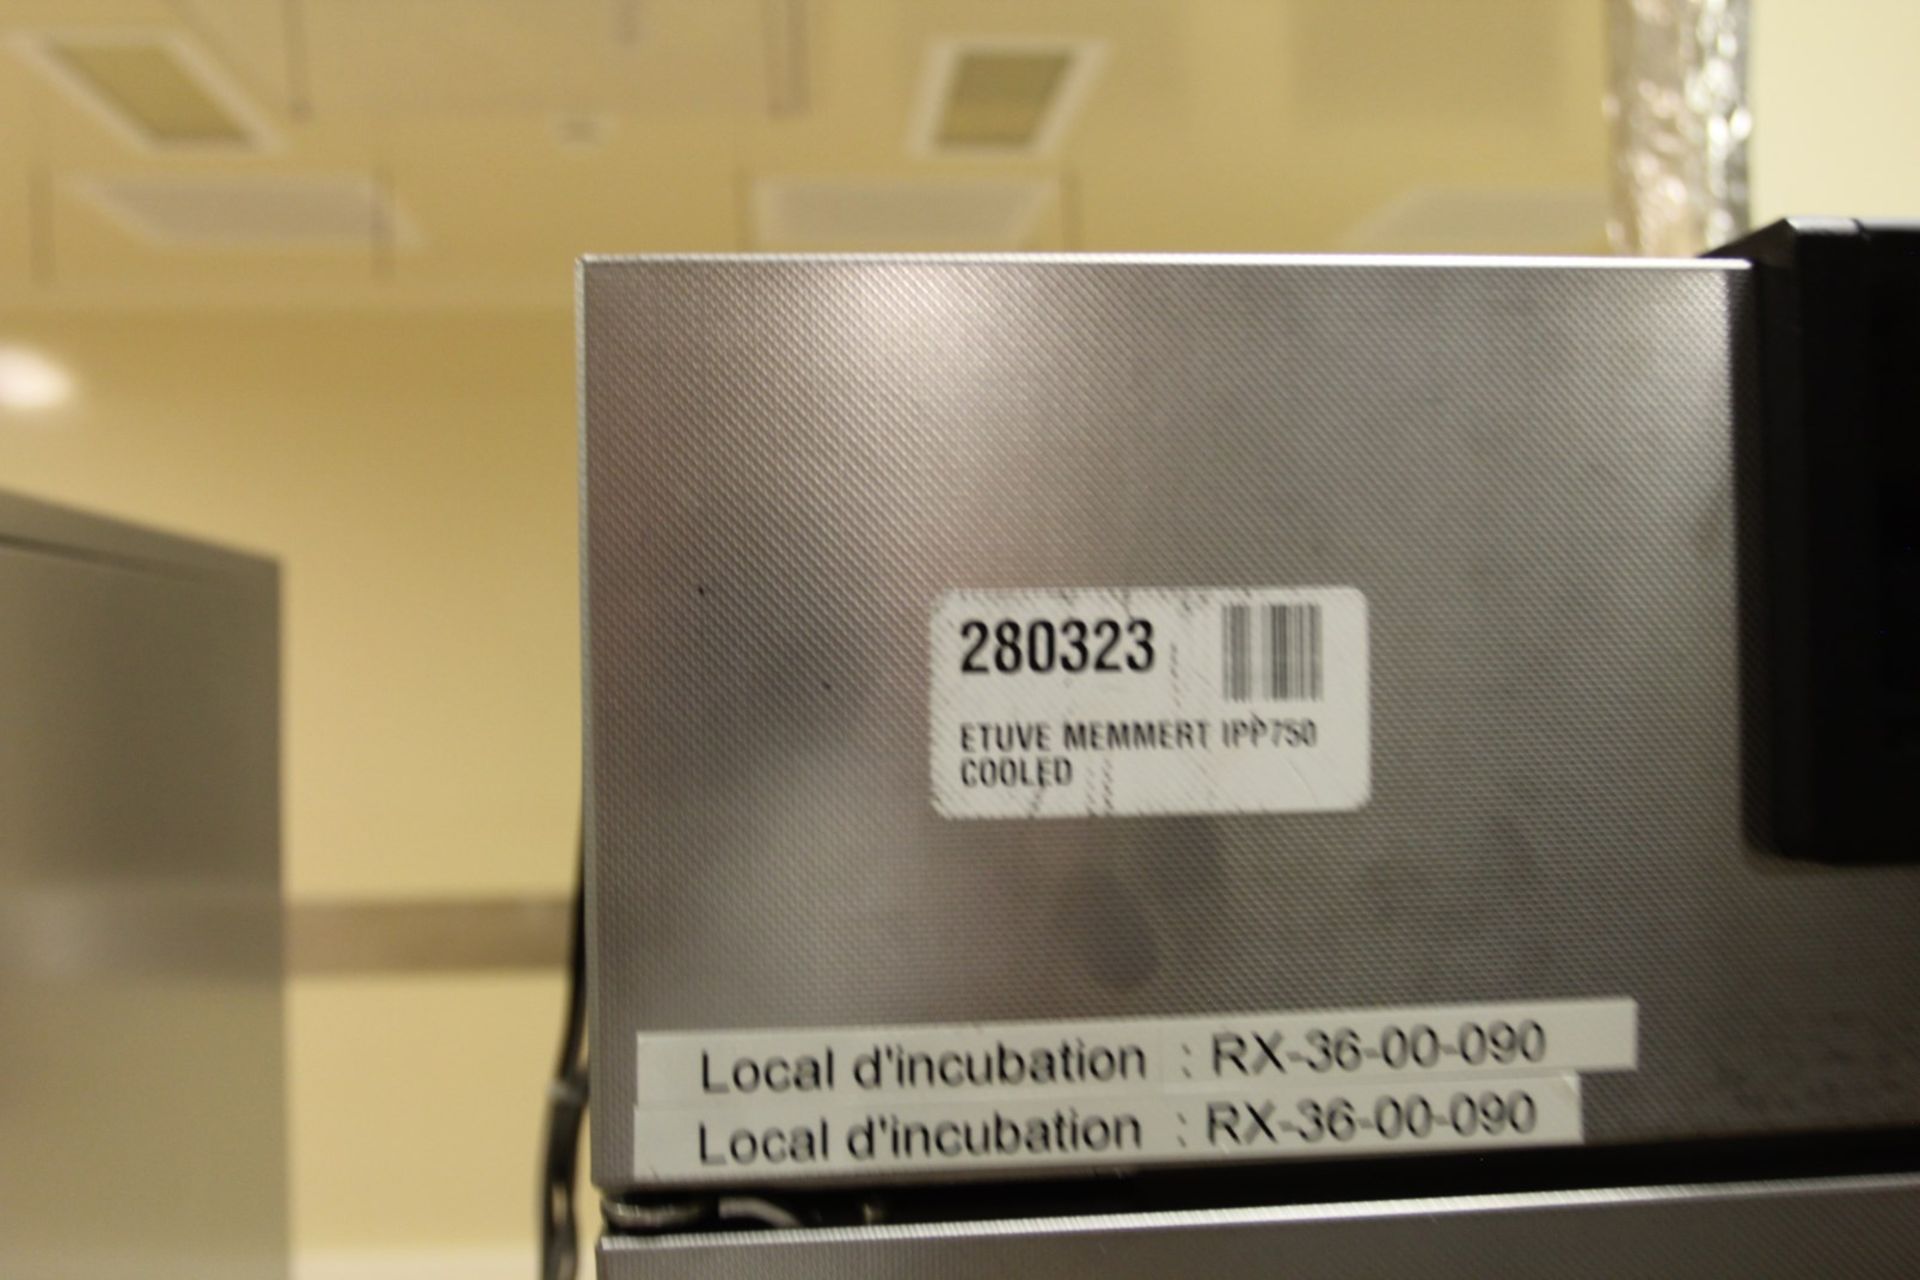 Memmert IPP 750 Incubator, s/n V813.0042, 70 Degree Celcius Max Temp - Image 5 of 5